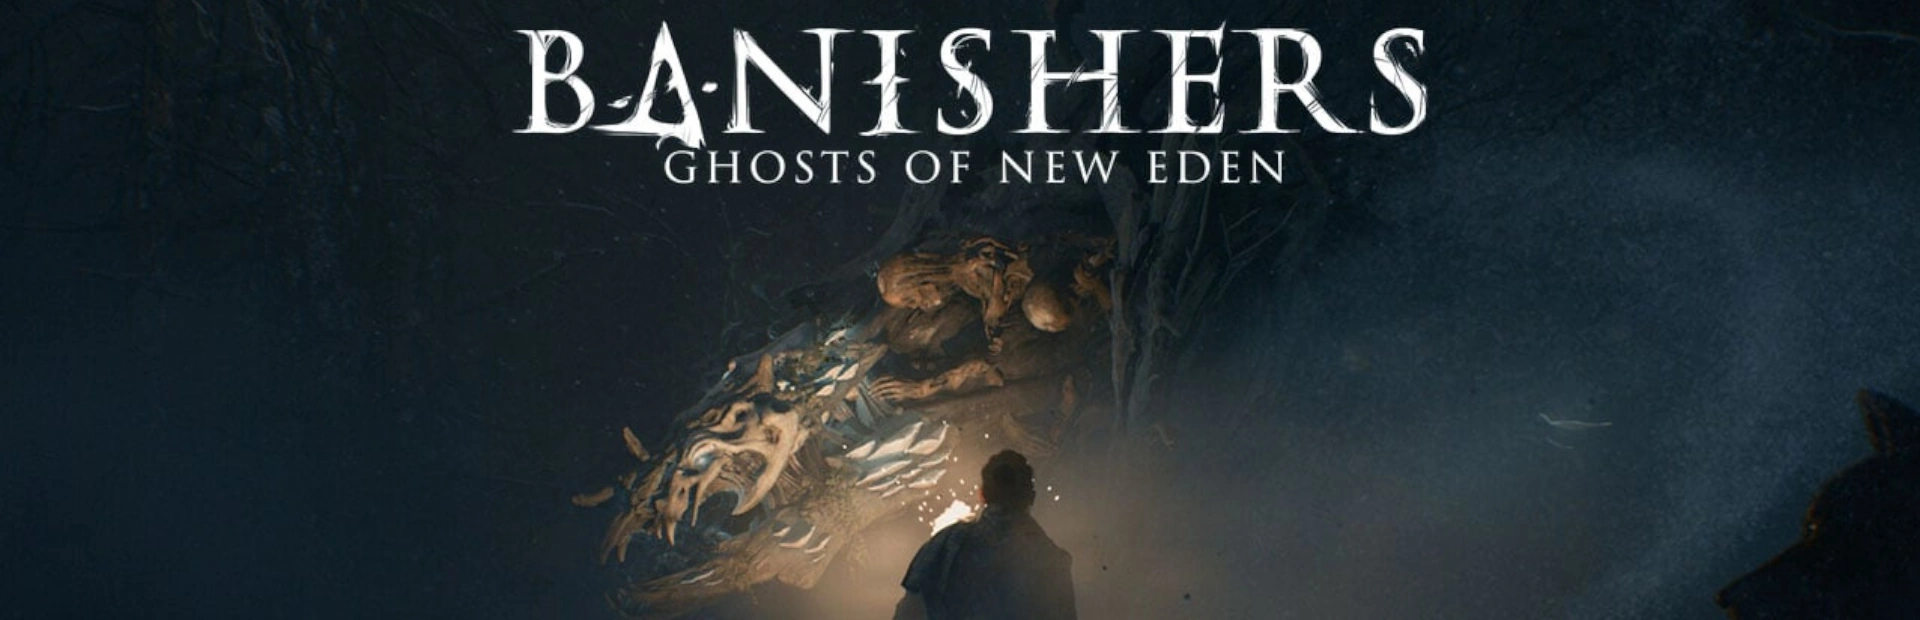 دانلود بازی Banishers Ghosts of New Eden برای کامپیوتر | گیمباتو